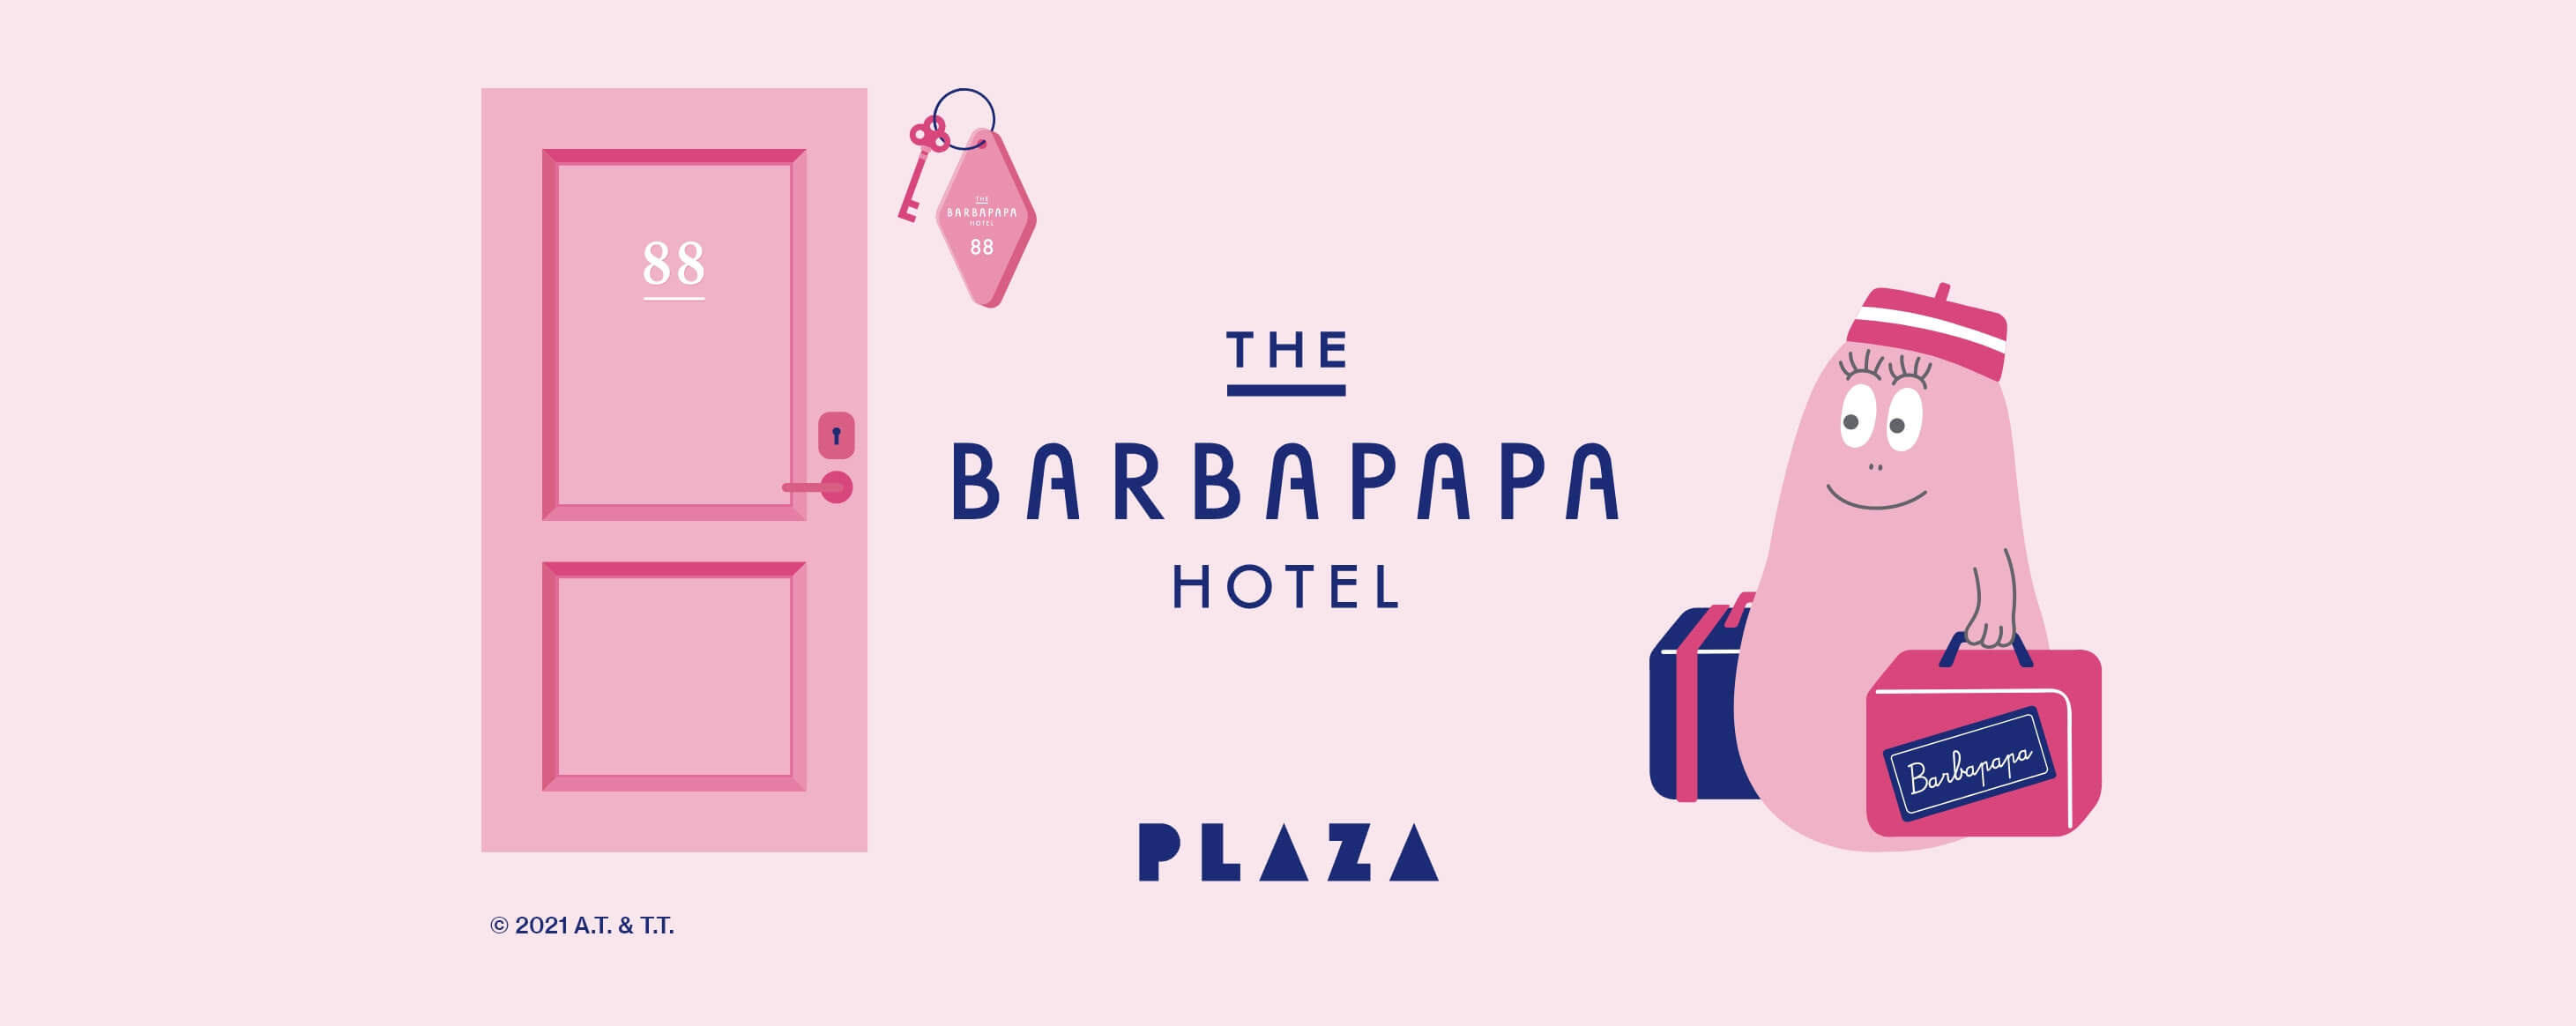 THE BARBAPAPA HOTEL